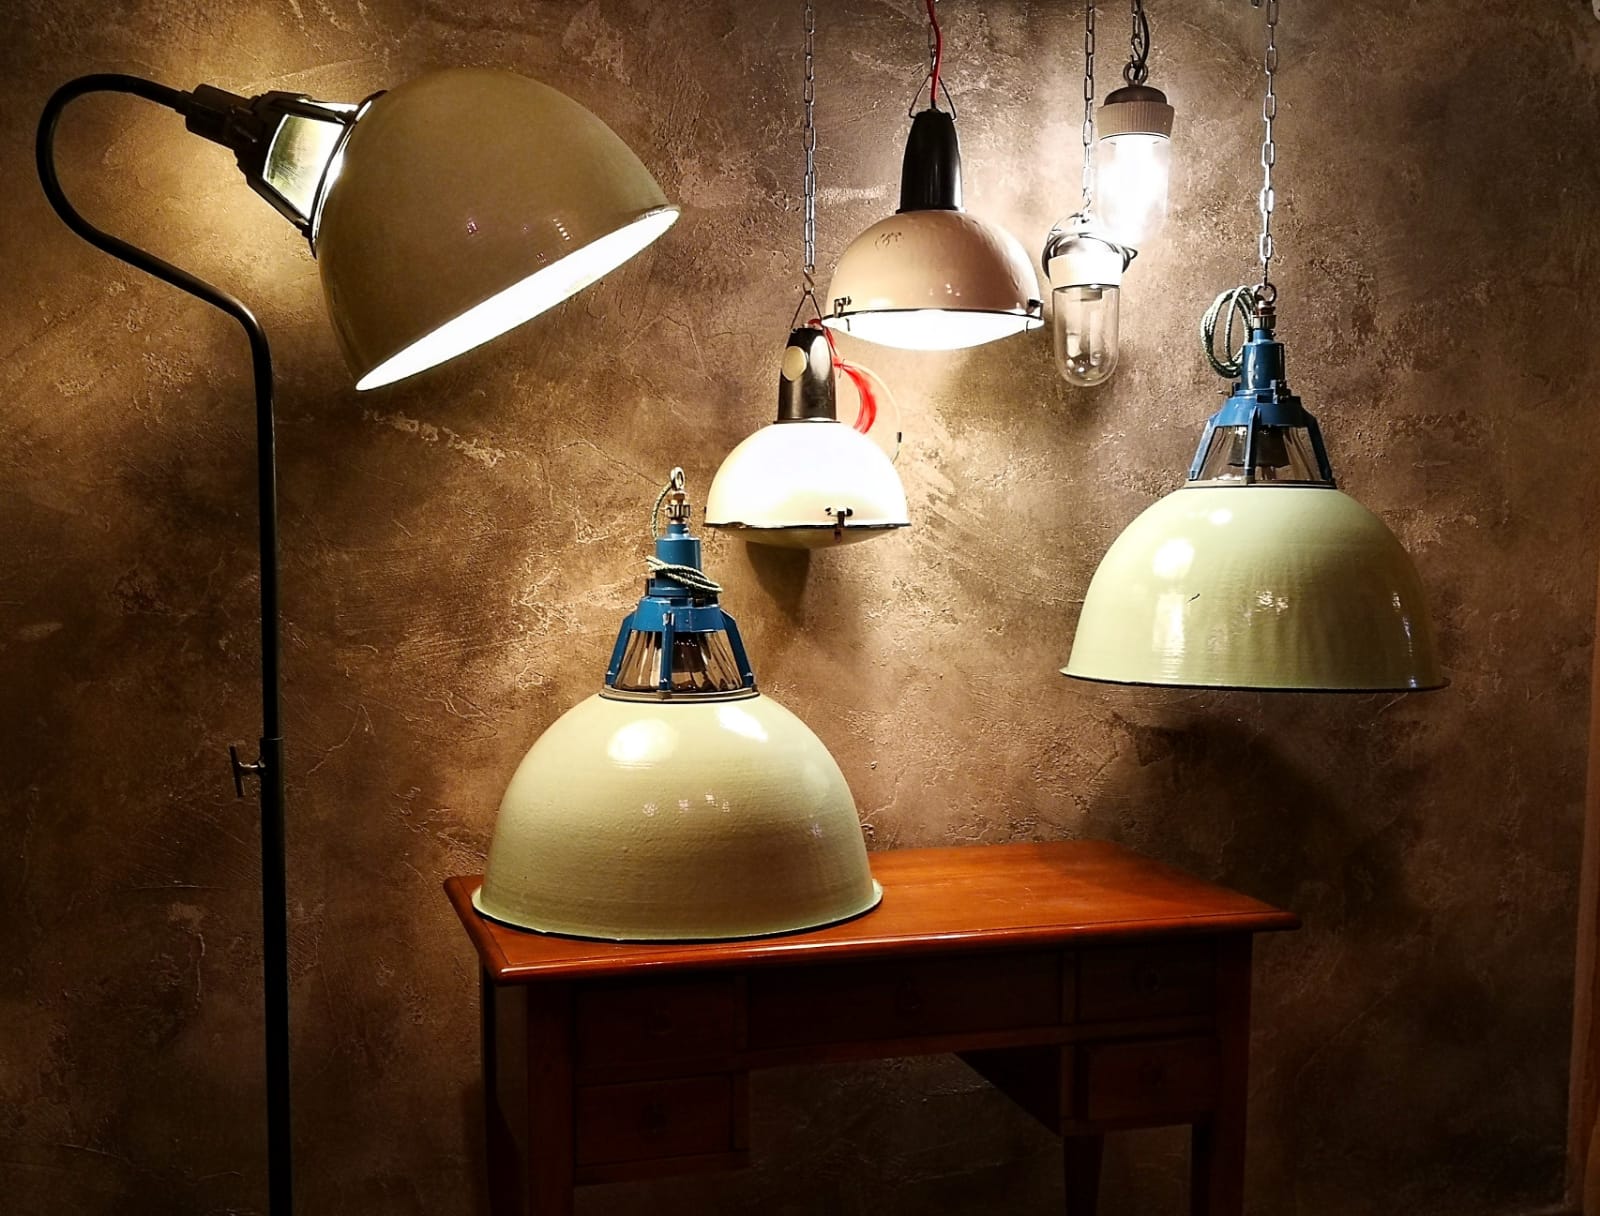 Storia delle lampade industriali: dagli anni ‘50 agli anni ‘80